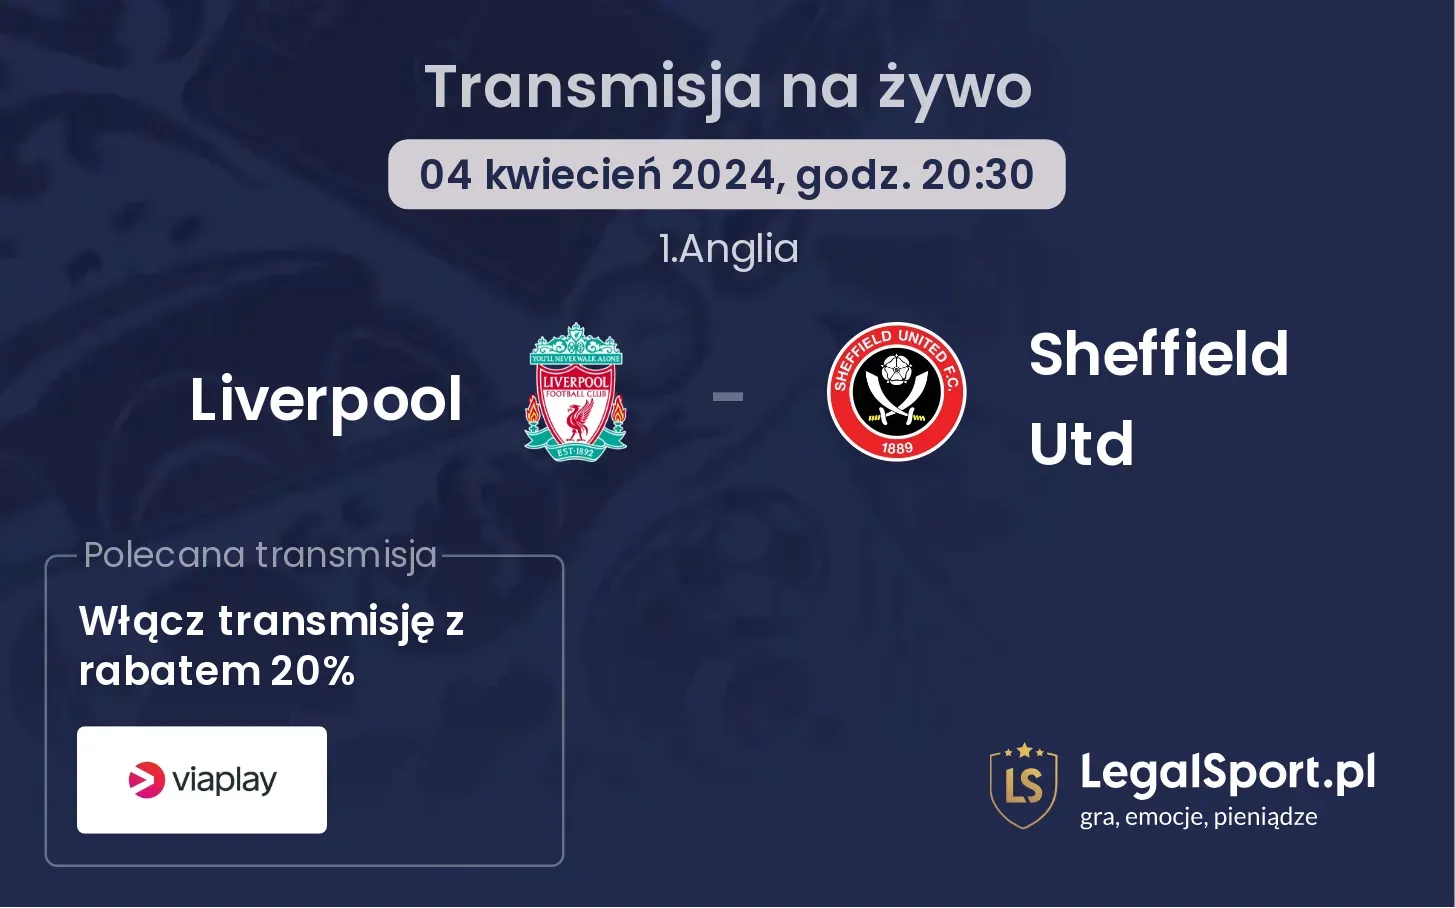 Liverpool - Sheffield Utd transmisja na żywo